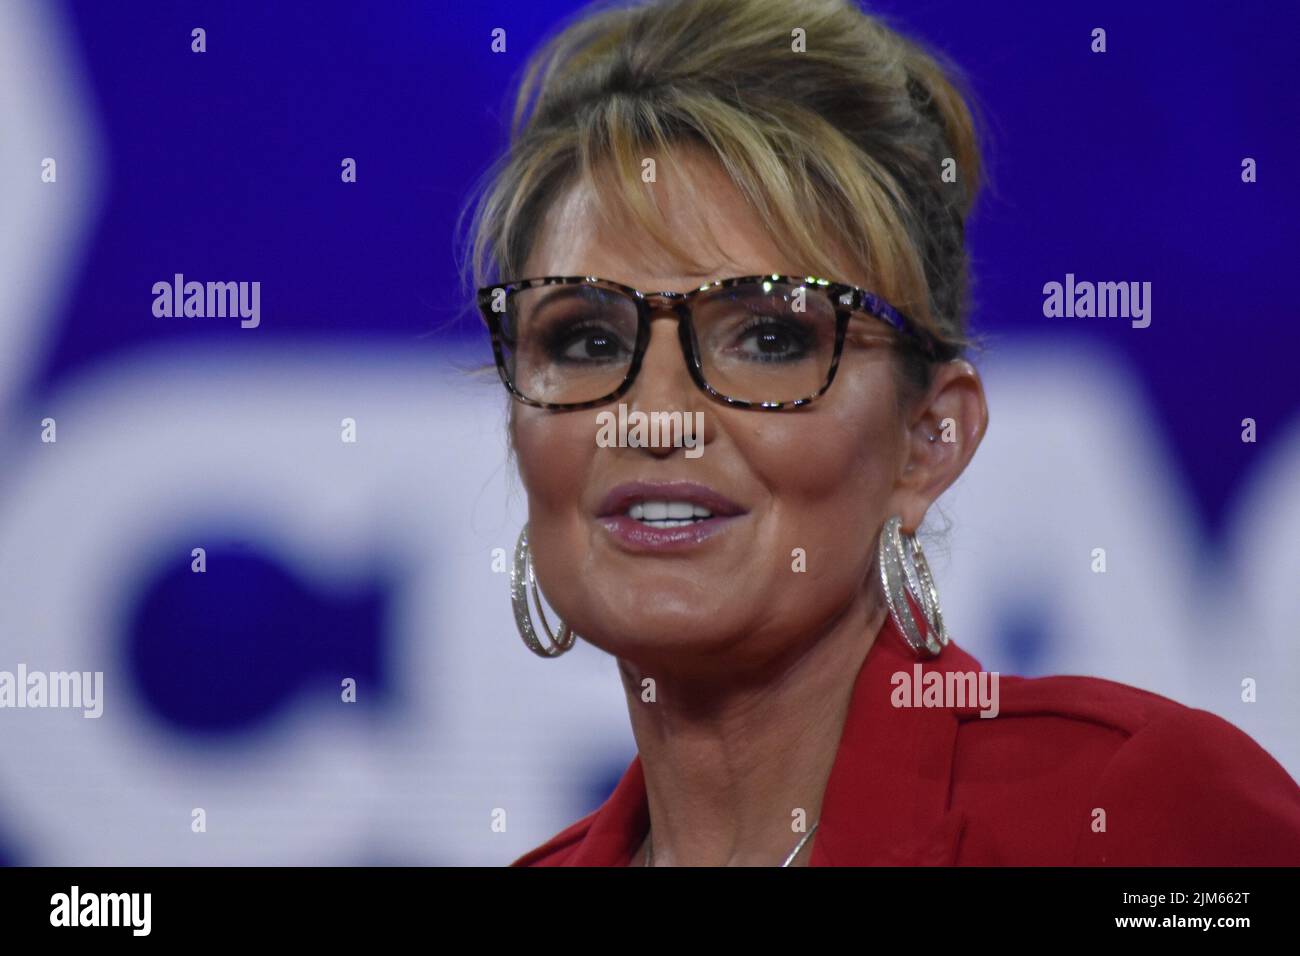 Dallas, Texas, EE.UU. 4th de Ago de 2022. (NUEVO) Sarah Palin pronuncia comentarios en la Conferencia de Acción Política Conservadora 2022 en Dallas, Texas. 4 de agosto de 2022, Dallas, TX, EE.UU. Sarah Palin pronuncia un discurso durante la Conferencia de Acción Política Conservadora (CPAC), celebrada en el estado de Texas, Estados Unidos, el jueves (4). Sarah Palin se postula para que el Congreso reemplace al Diputado Don Young, quien murió. Sarah Palin fue Gobernadora del Estado de Alaska. La conferencia se transmite en vivo en el sitio web de CPAC y en línea en Fox Nation. (Imagen de crédito: © Kyle Mazza/TheNEWS2 via ZUMA Press WI Foto de stock